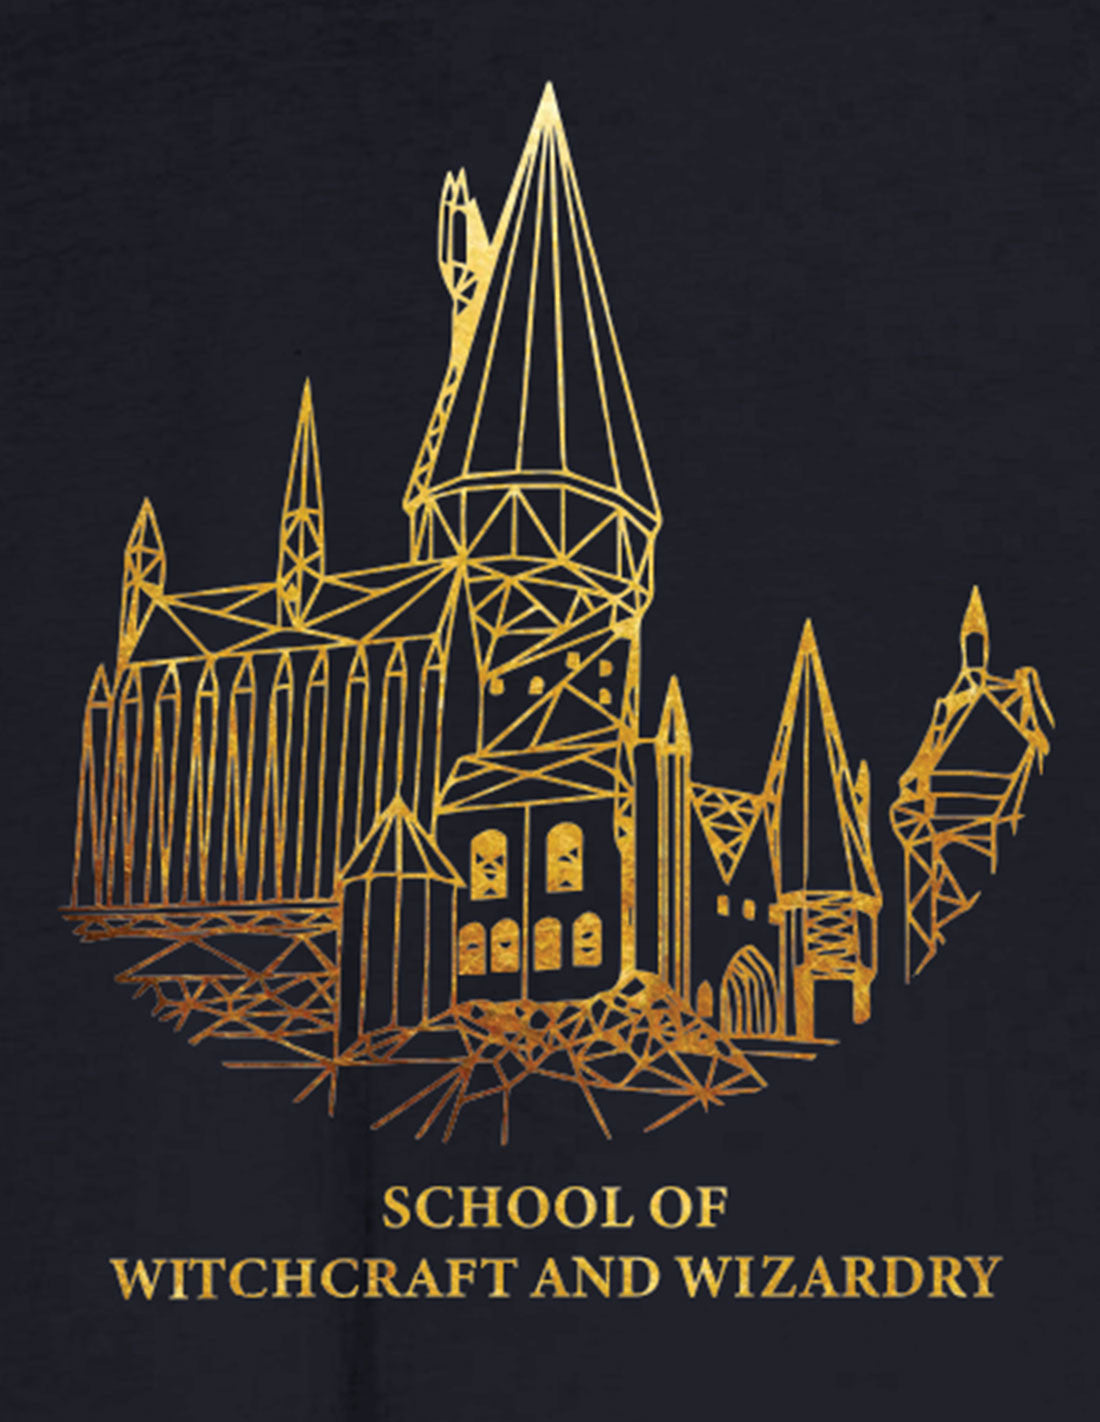 Harry Potter Women's T-shirt - Golden Hogwarts